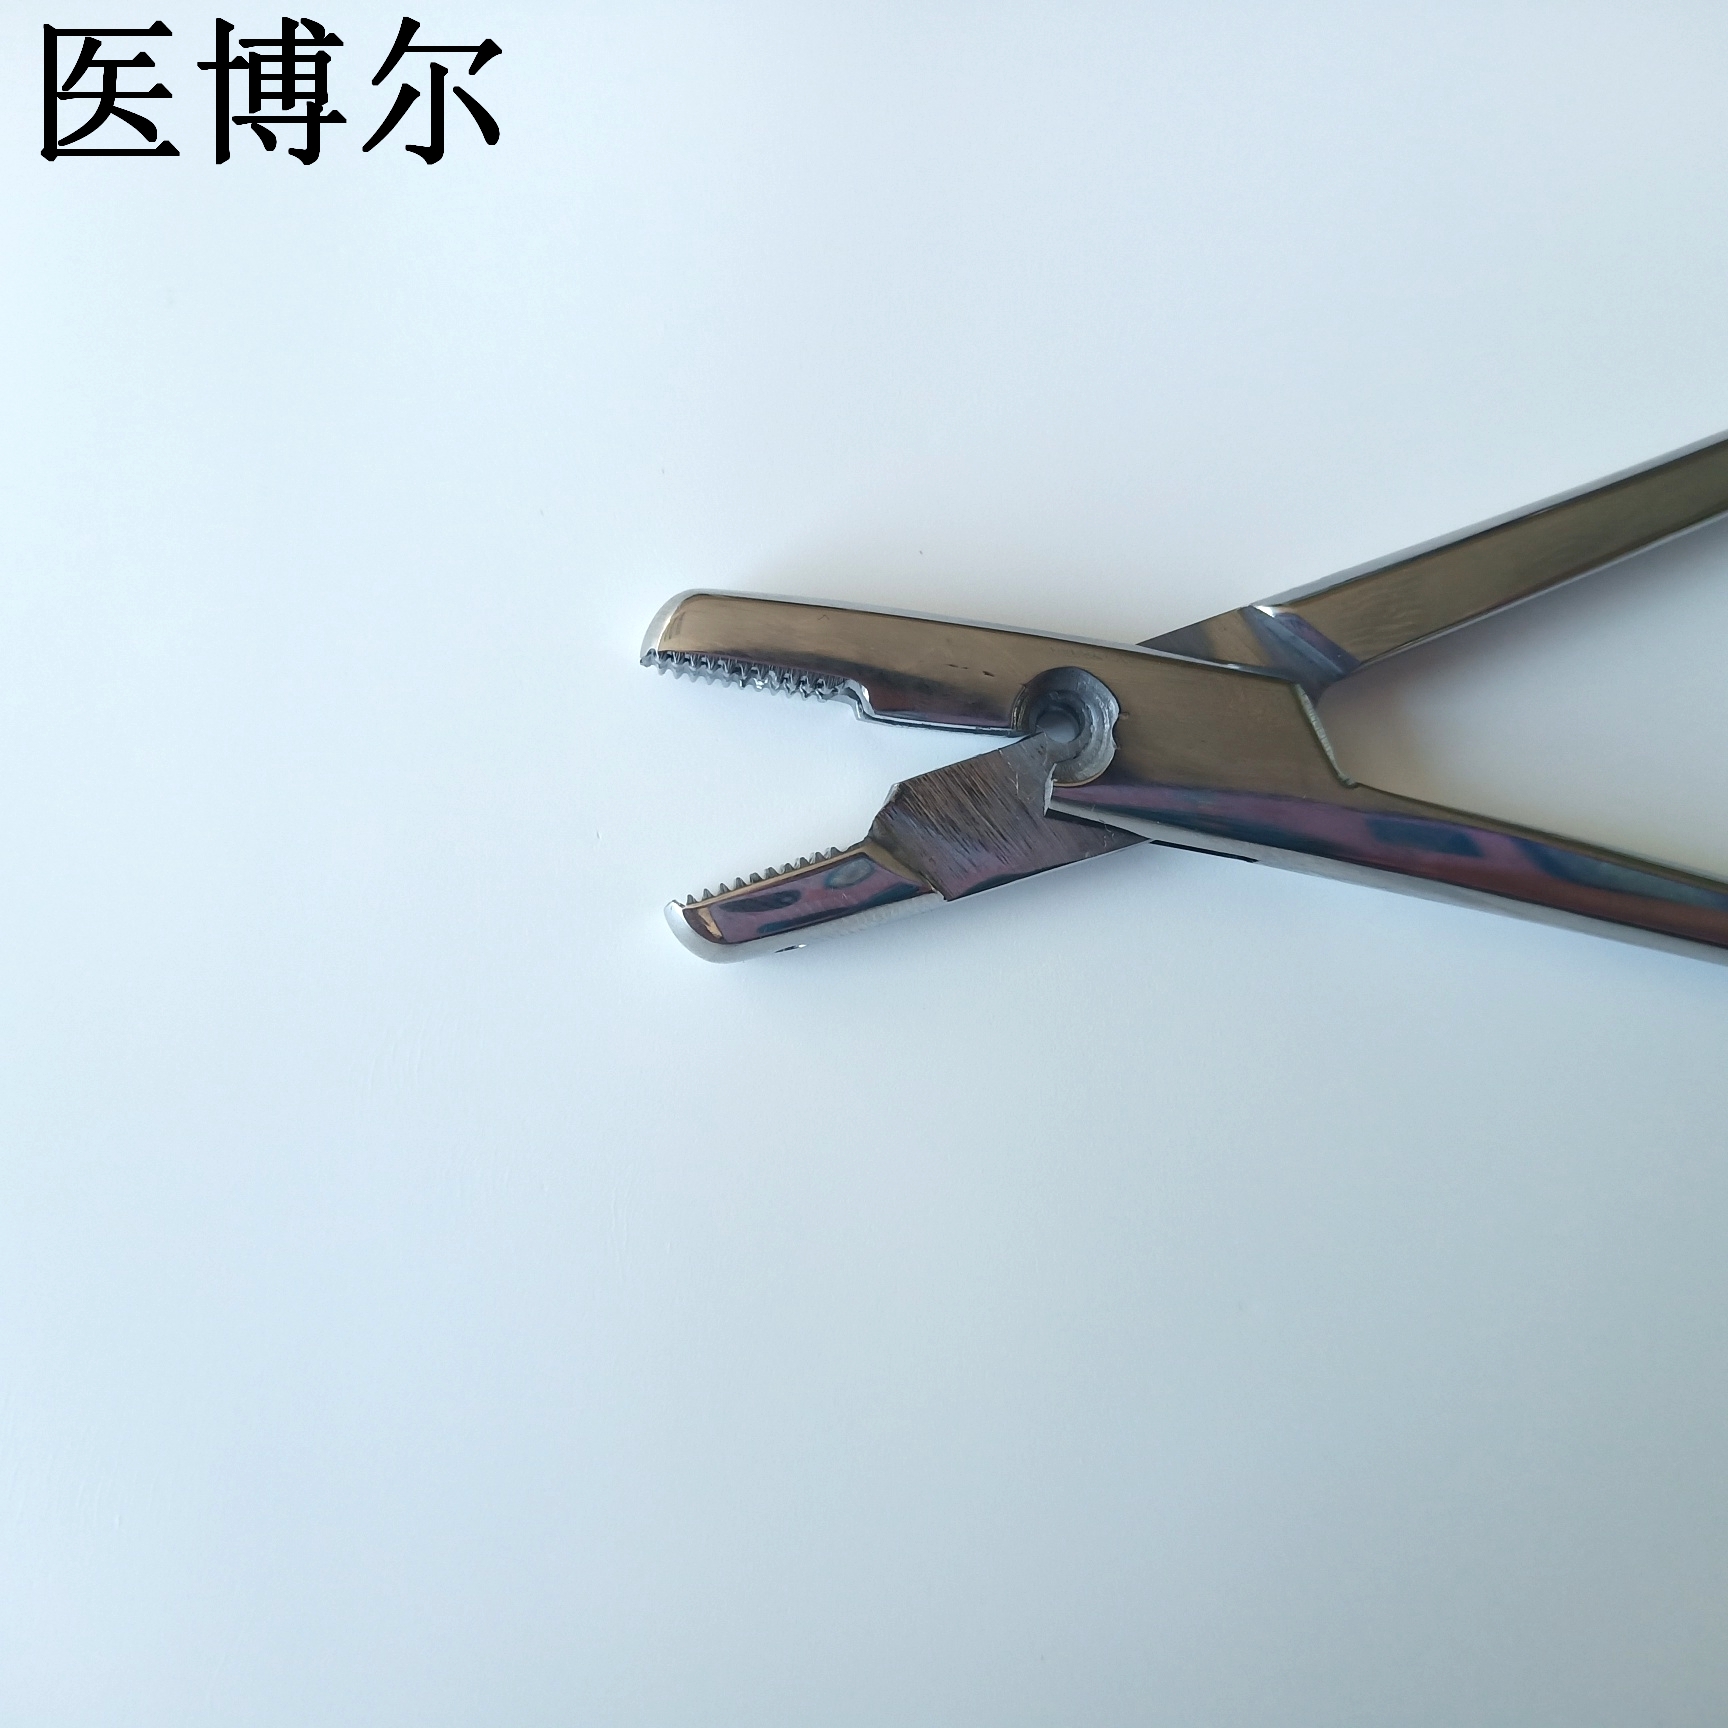 16cm钢丝钳 (7)_看图王.jpg